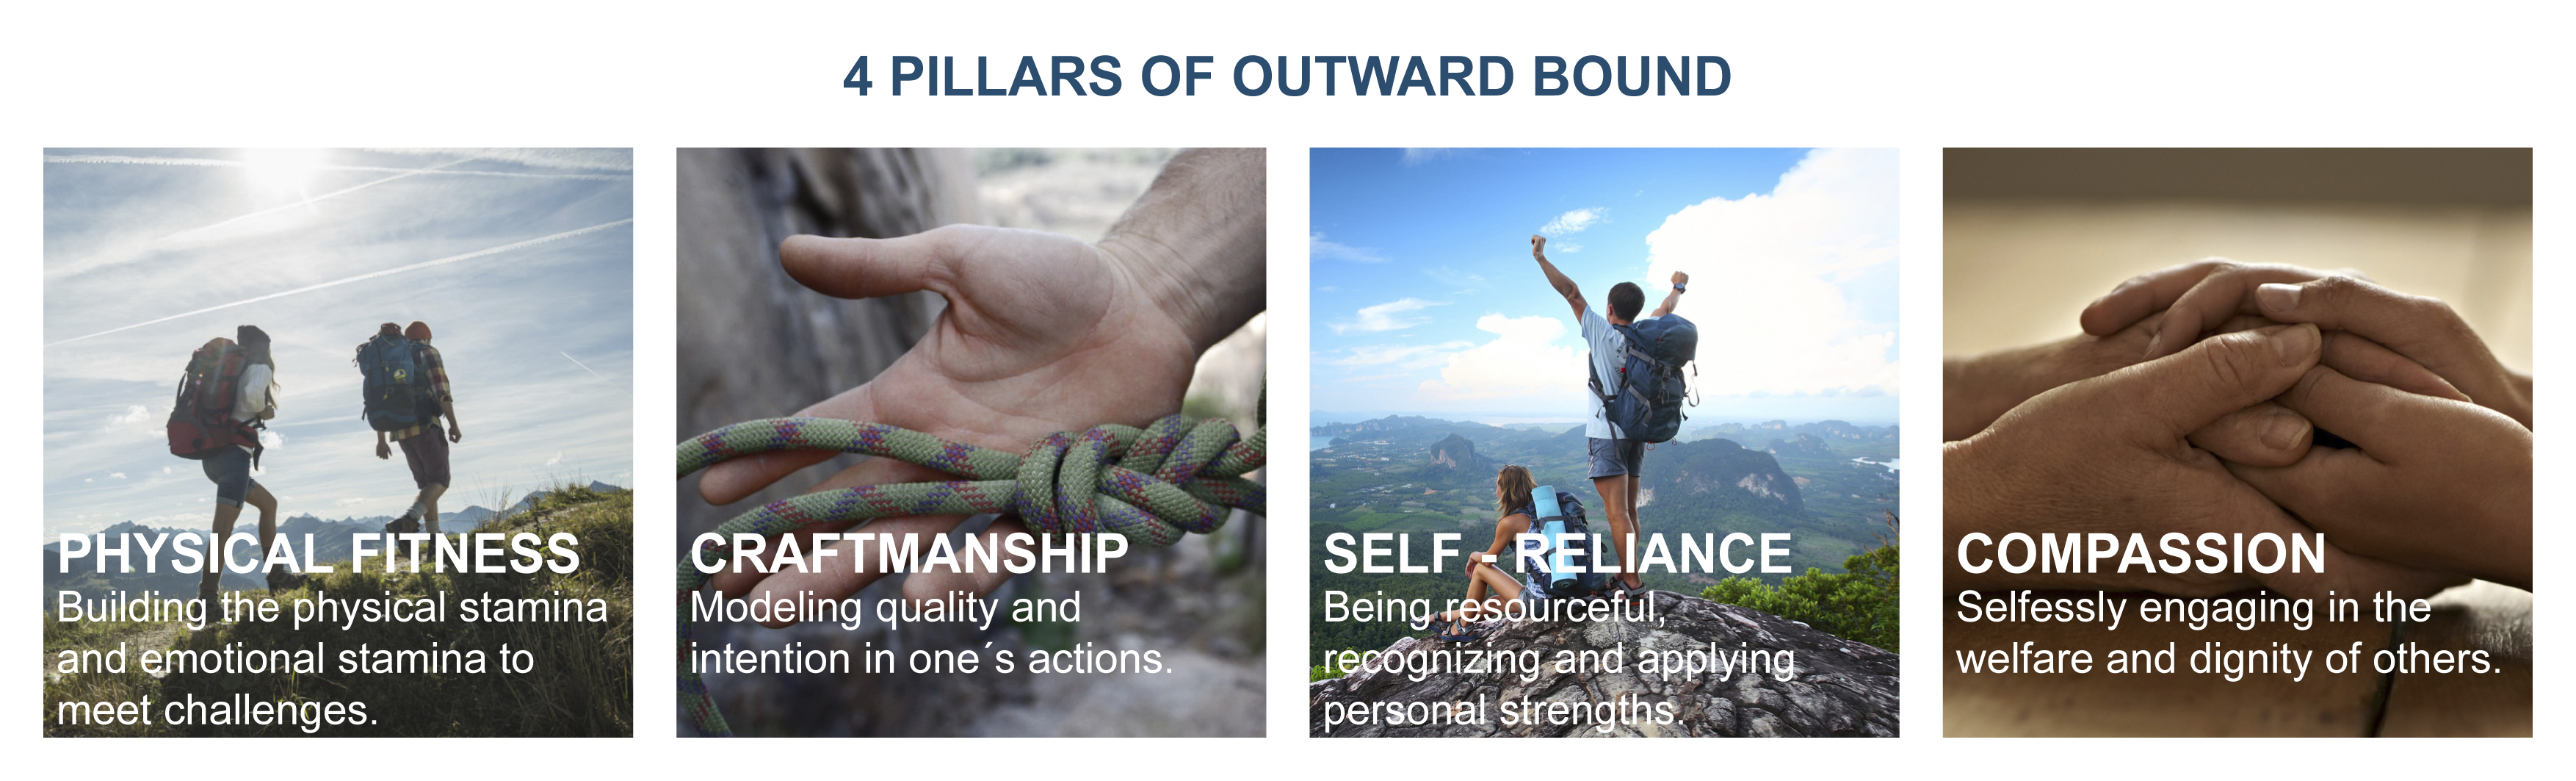 Outward Bound 4 pillars